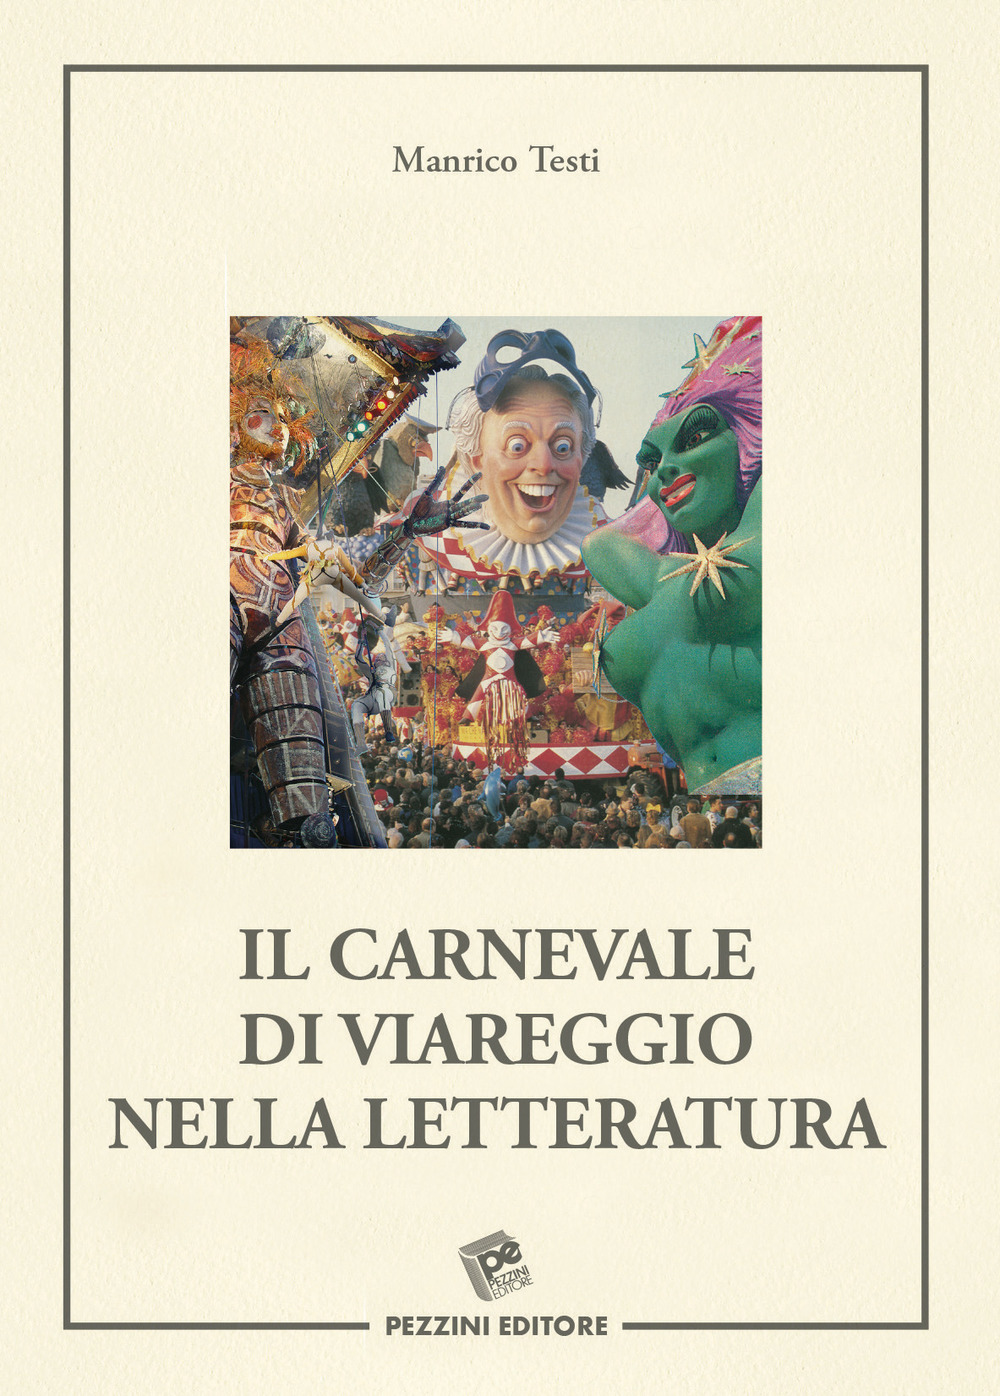 Il Carnevale di Viareggio nella letteratura